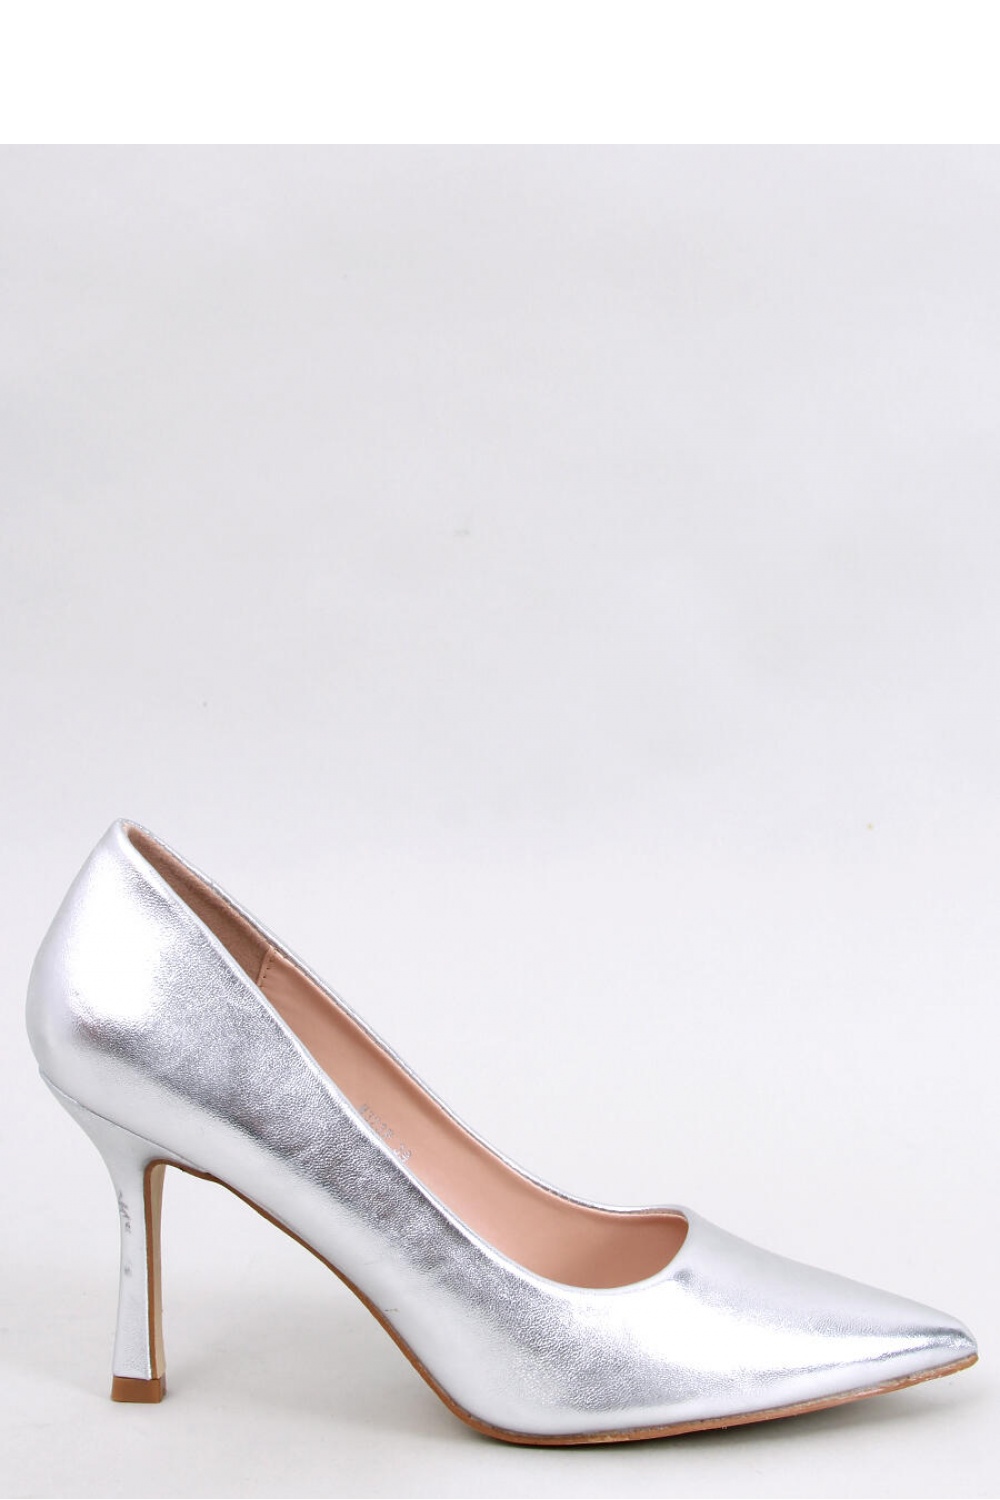 High heels model 192170 Inello